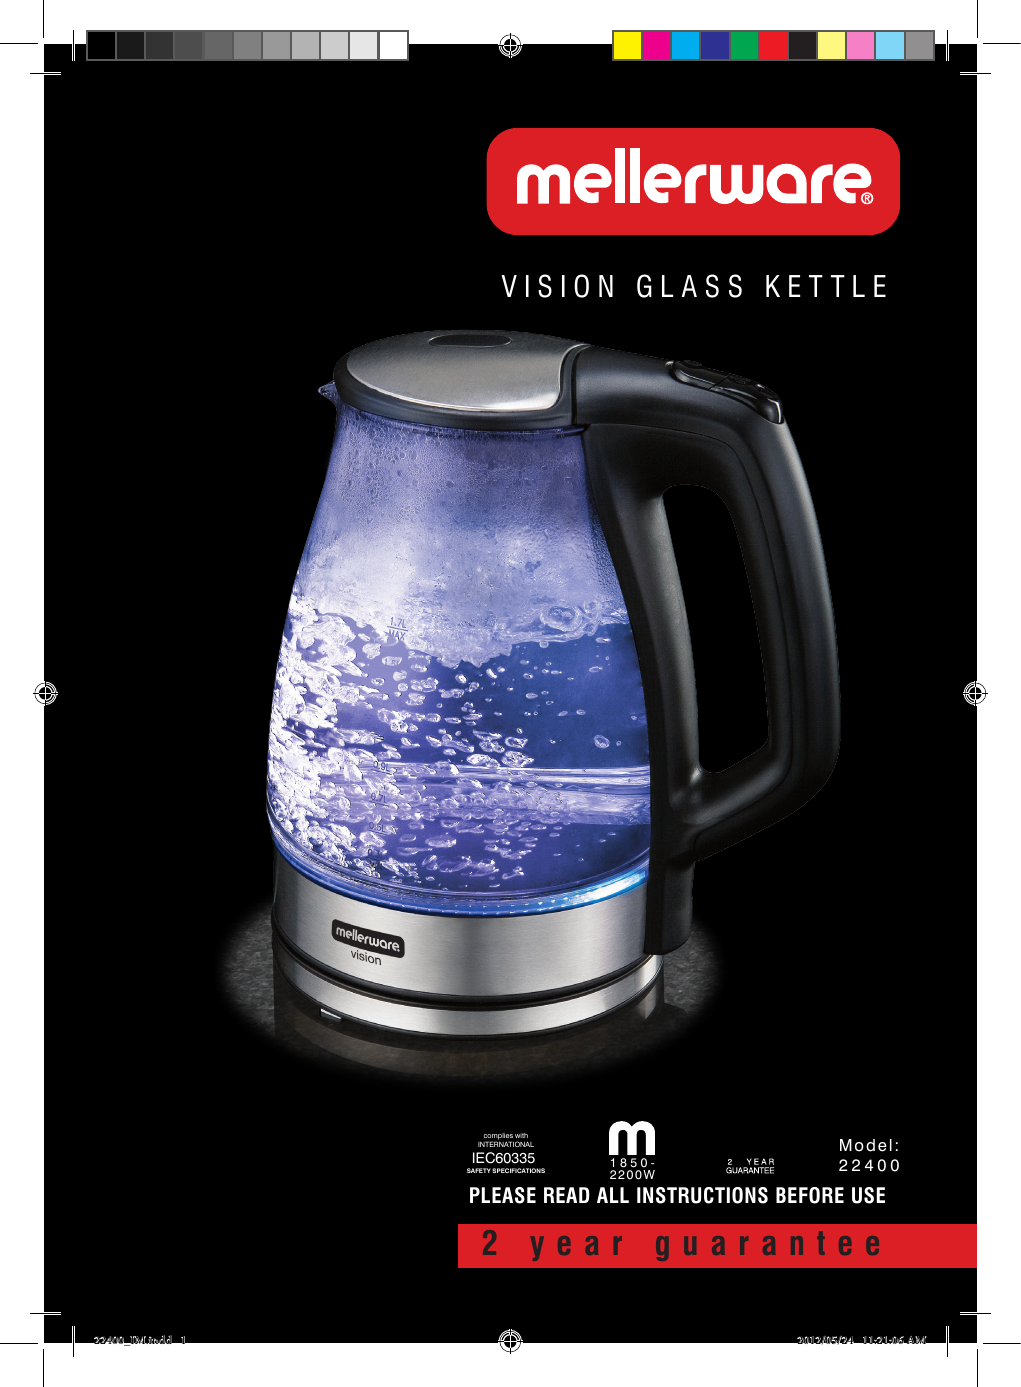 mellerware vision kettle